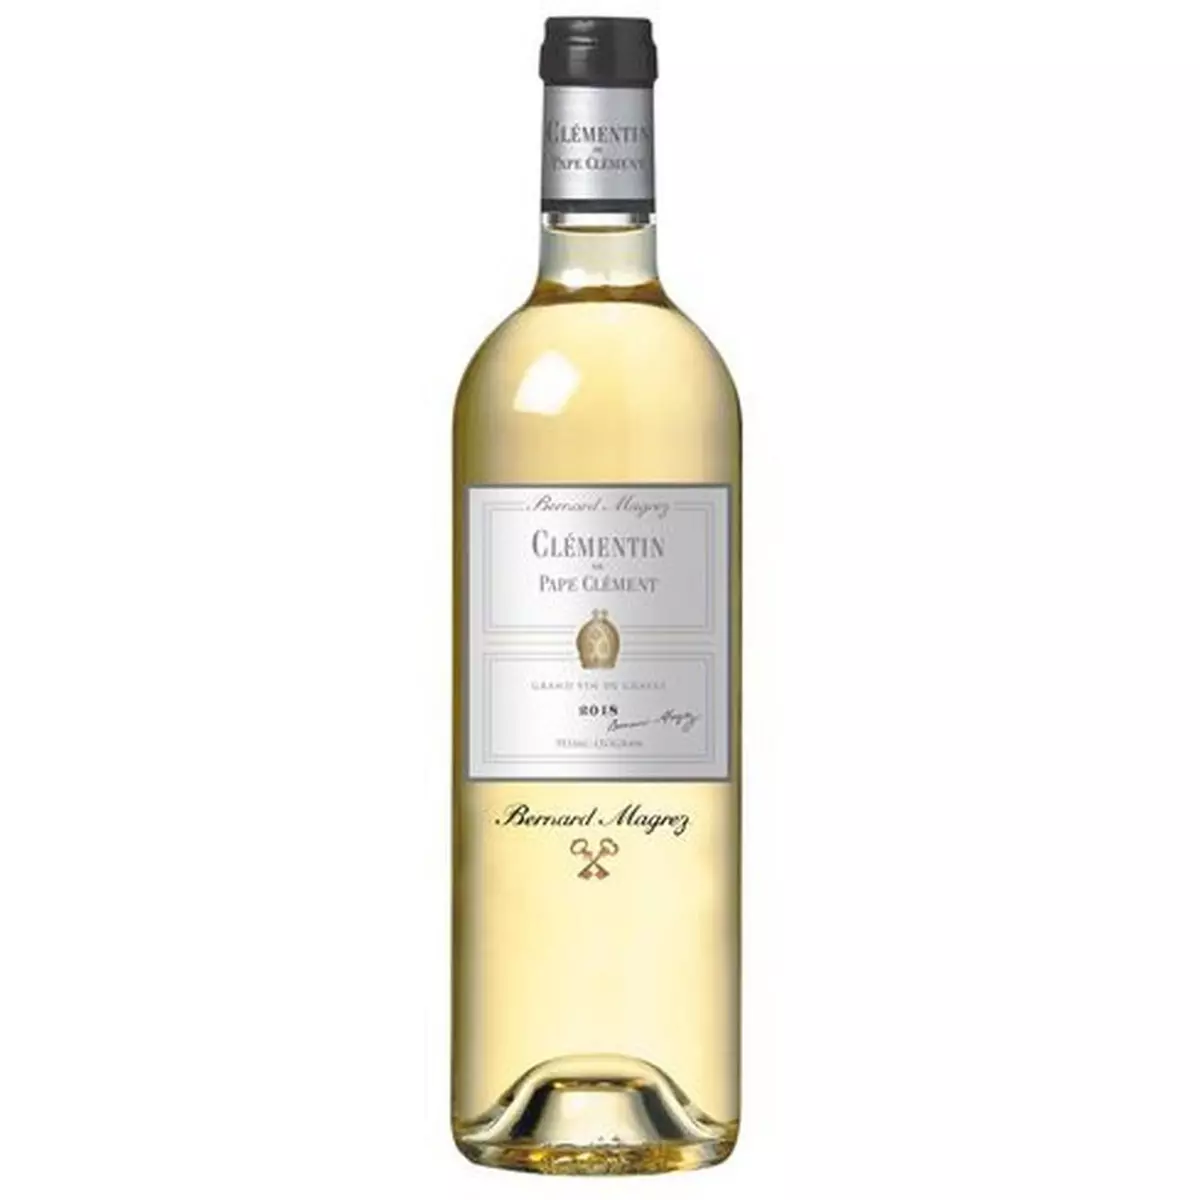 BERNARD MAGREZ AOP Pessac-Léognan Clémentin de Pape Clément second vin du Château Pape Clément blanc 2018 75cl